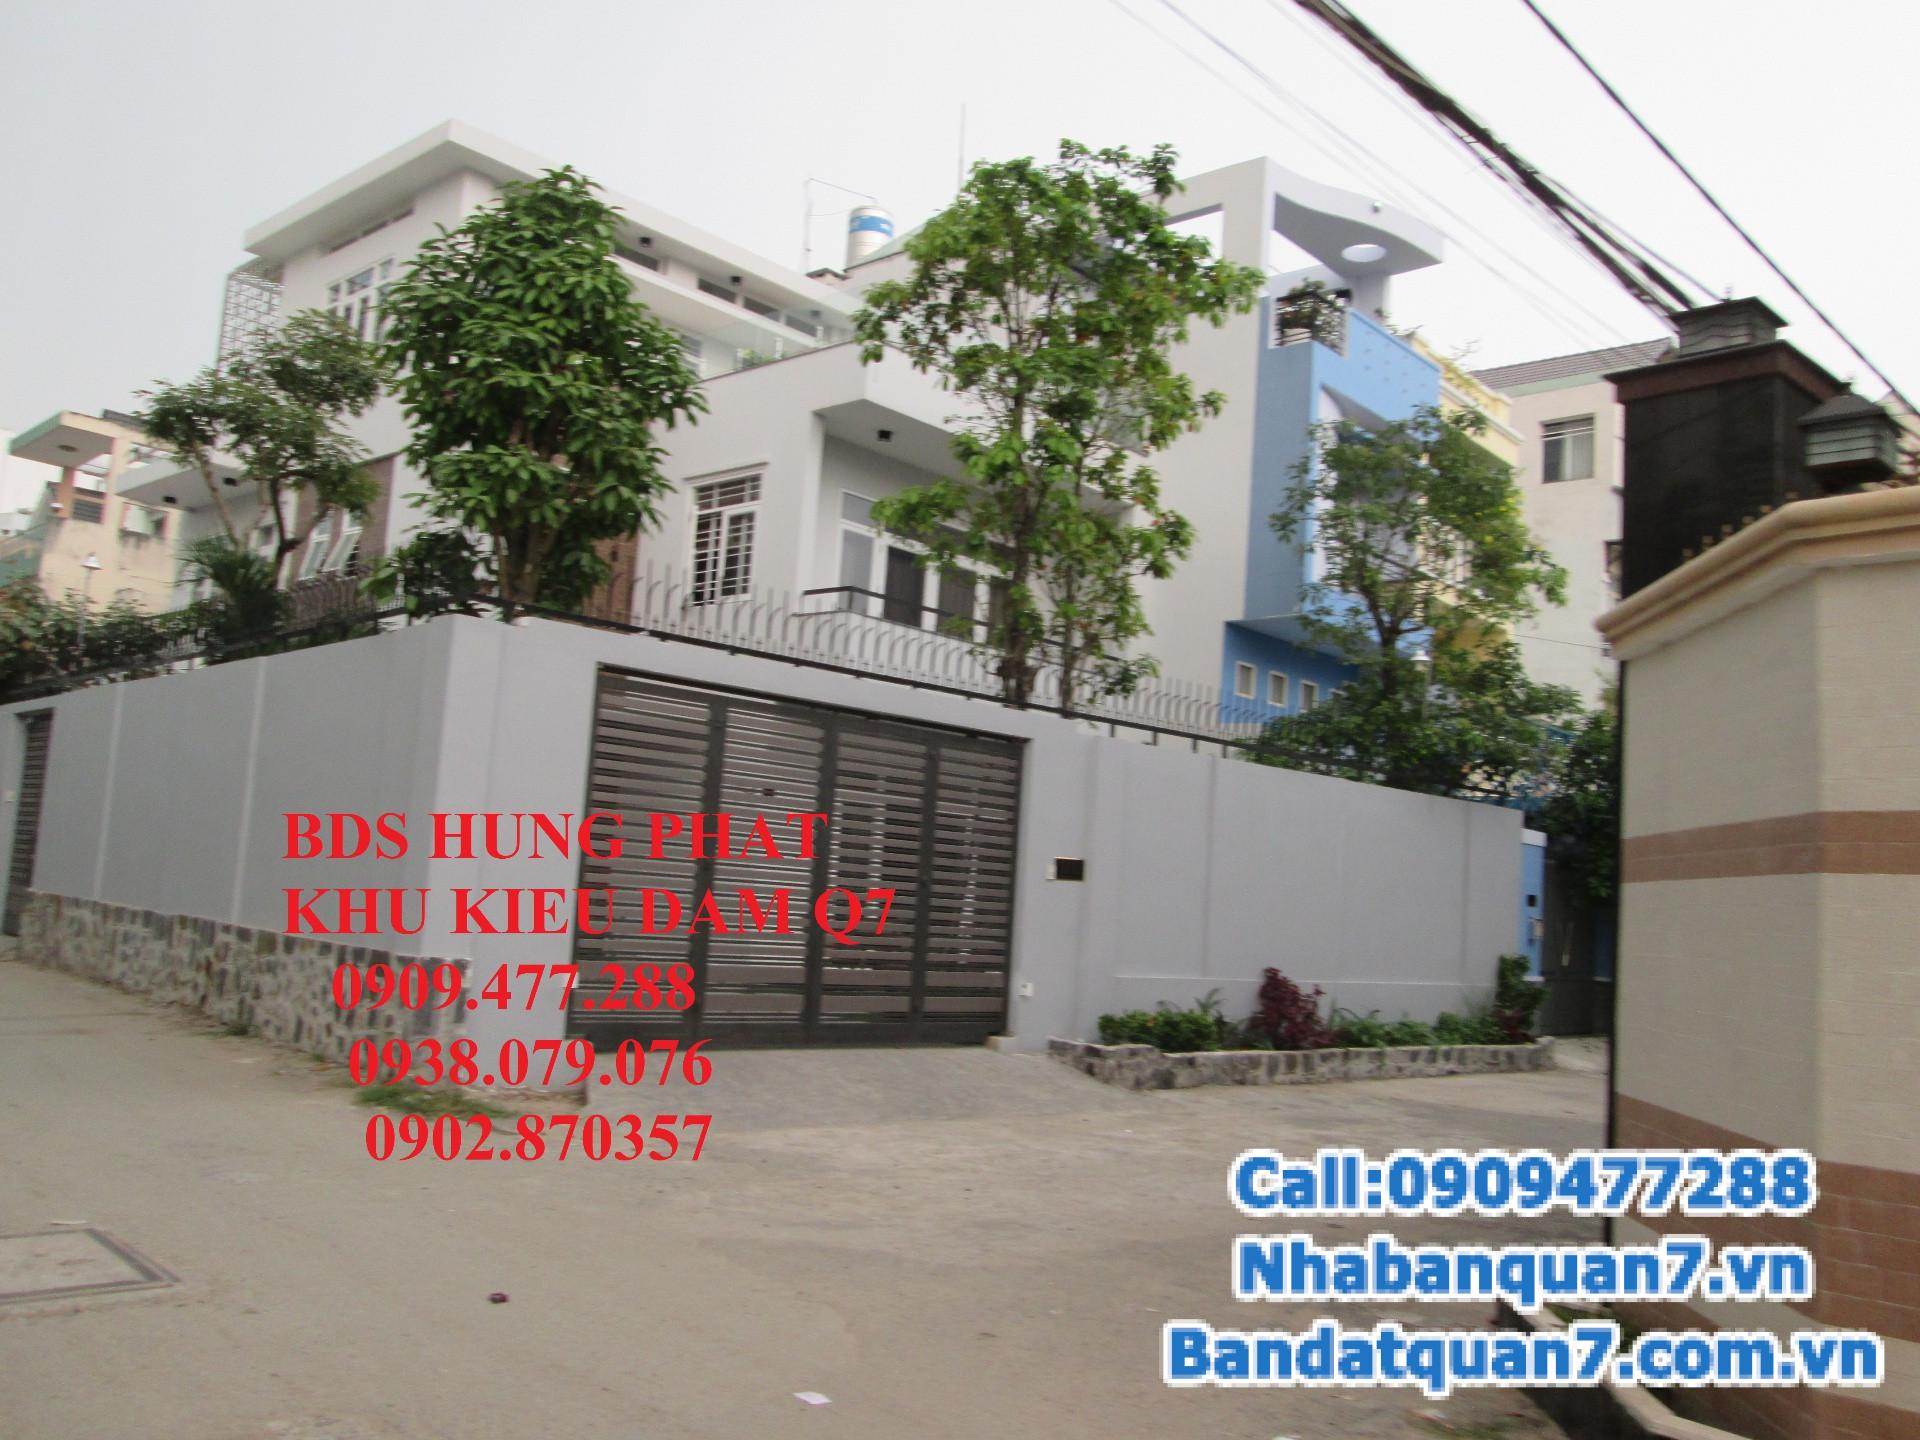 Gia đình có việc gấp nên cần bán nhà trọ đường Trần Xuân Soạn, phường Tân Hưng, Quận 7